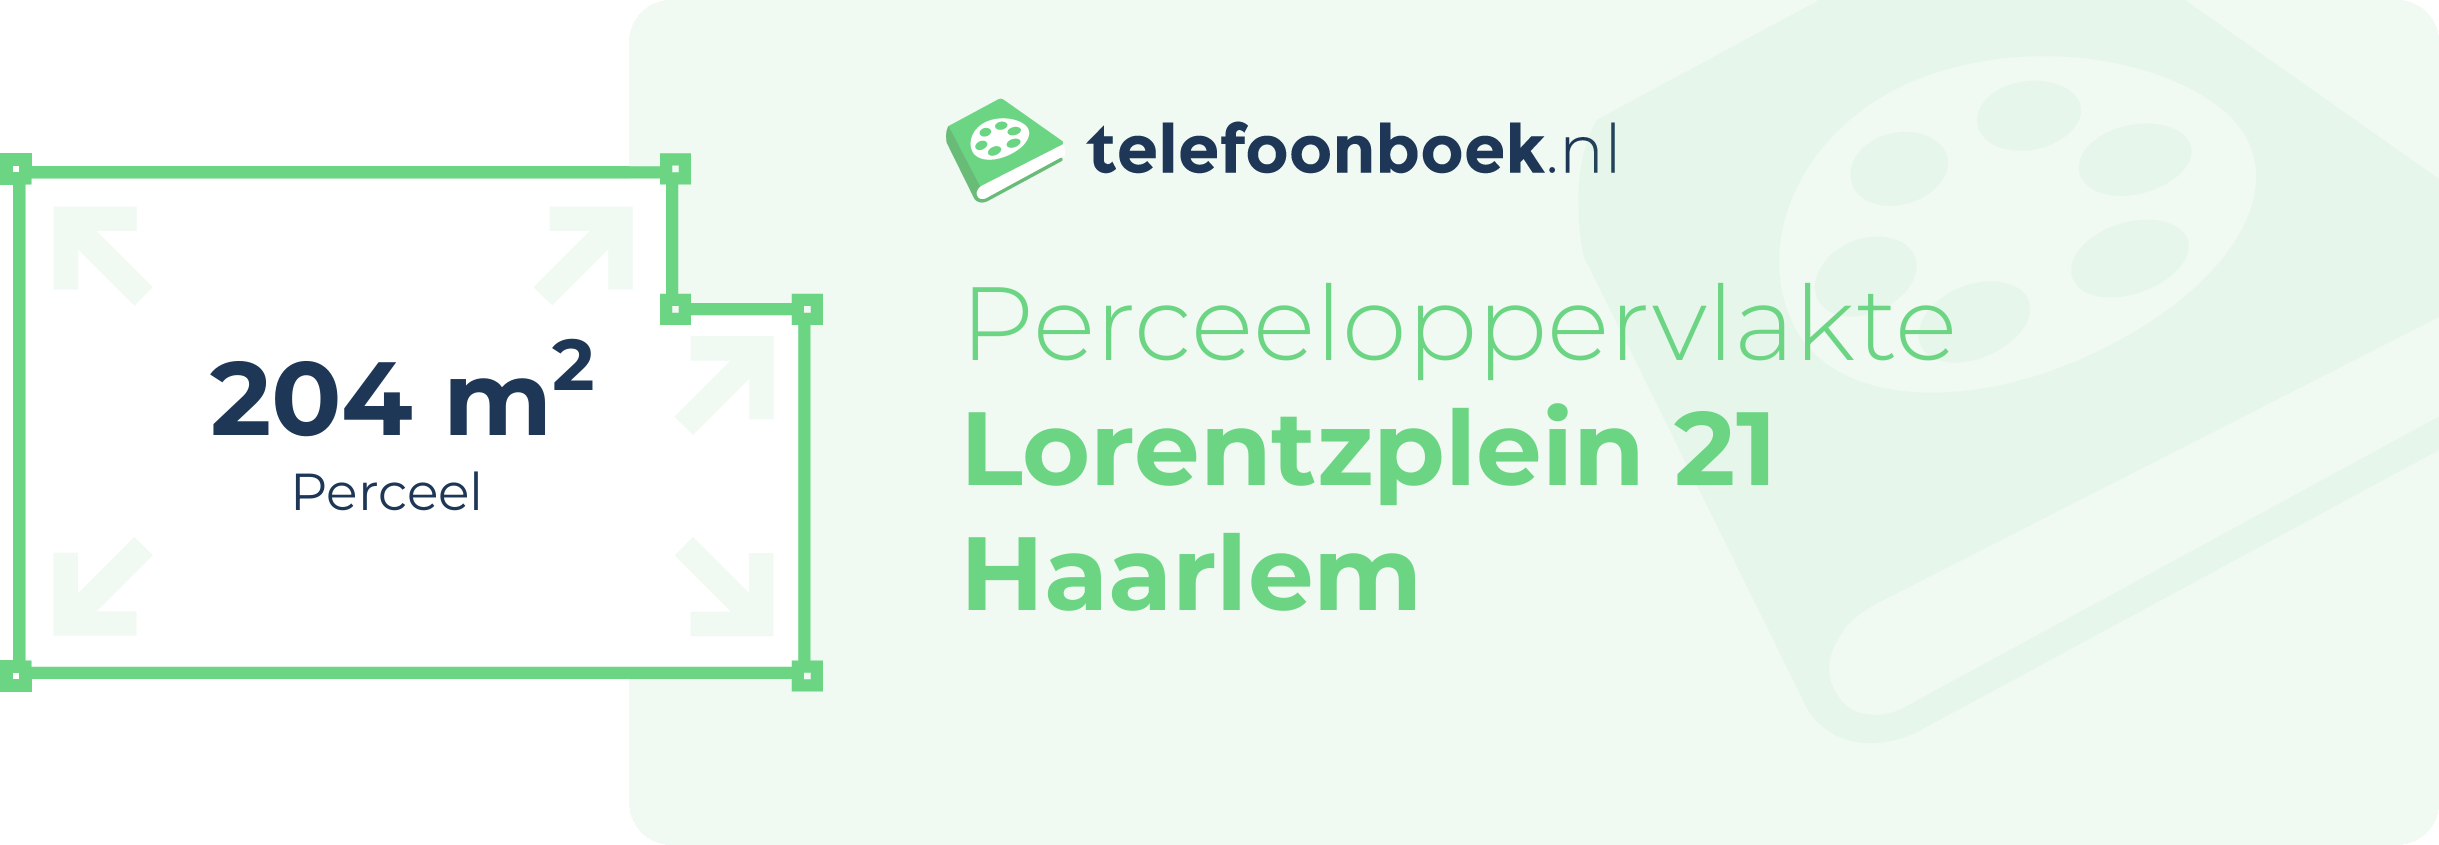 Perceeloppervlakte Lorentzplein 21 Haarlem